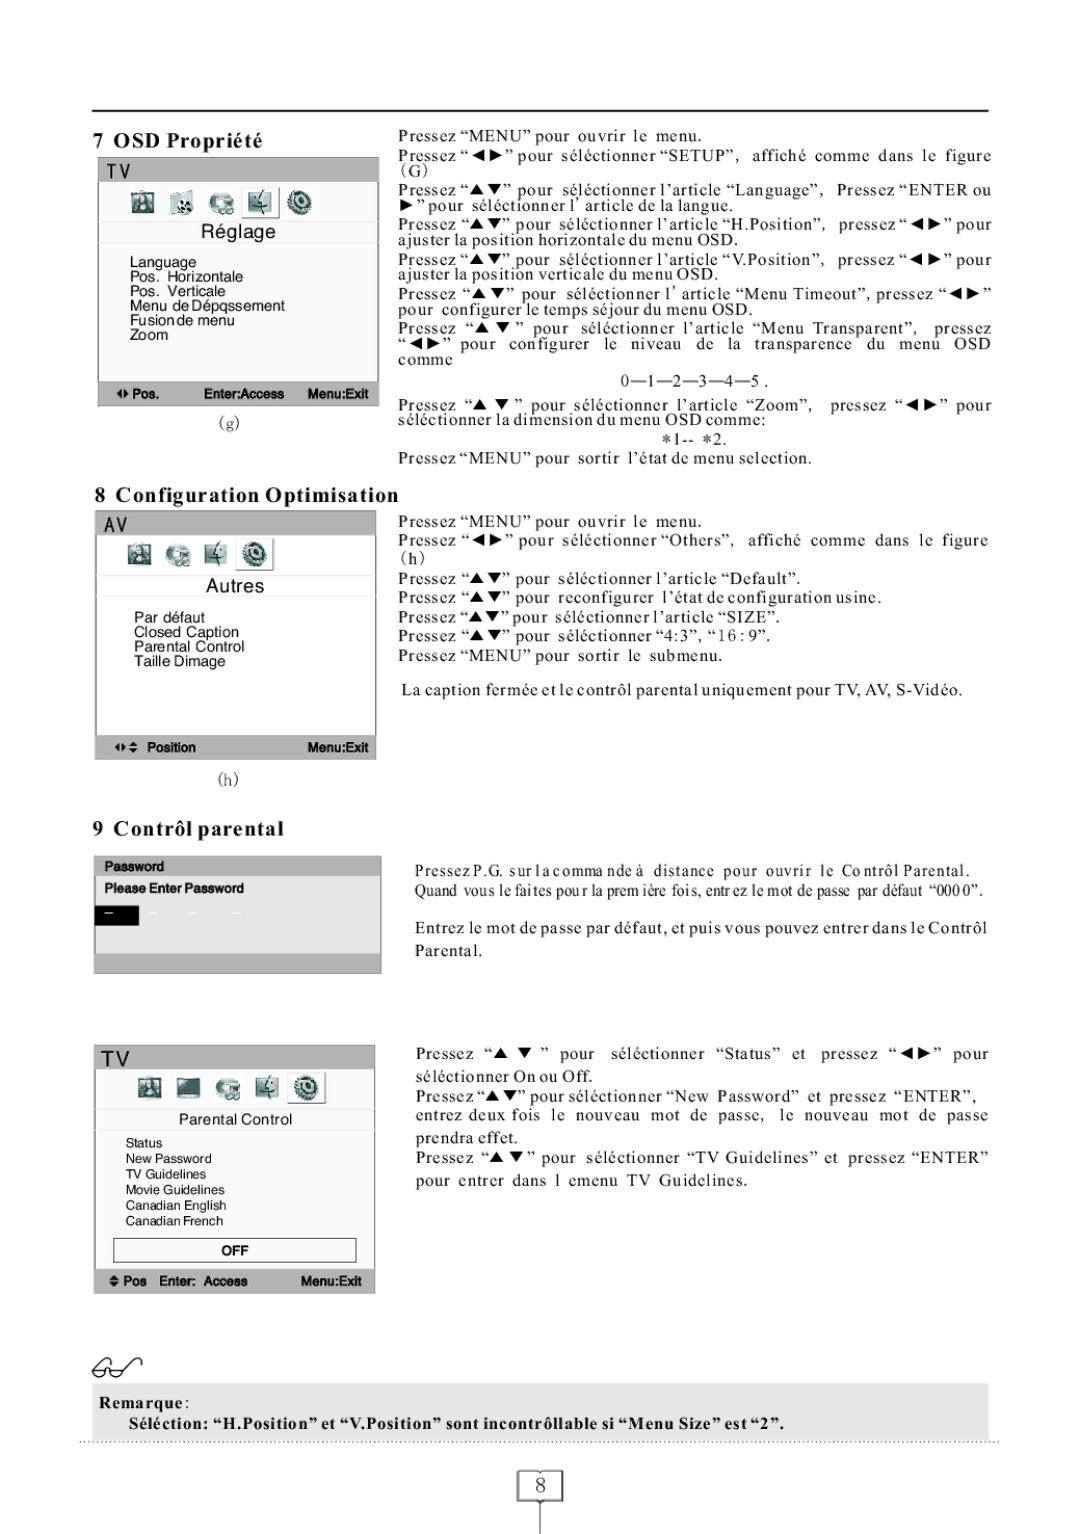 Curtis LCD1922 operating instructions OSD Propriété, Configuration Optimisation, Contrôl parental, Réglage, Autres 